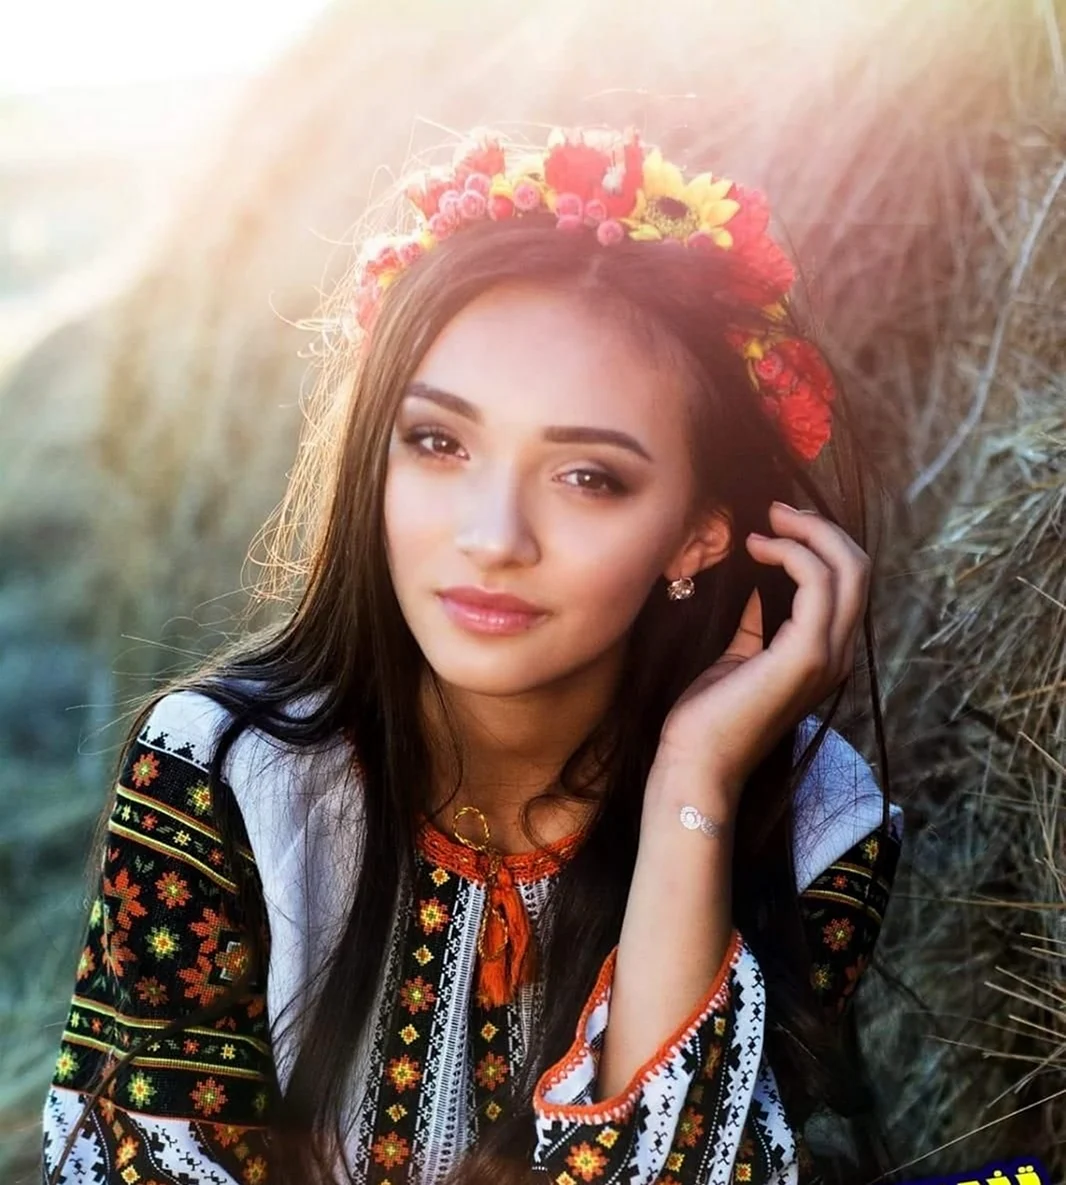 Образ украинской красавицы. Красивая девушка